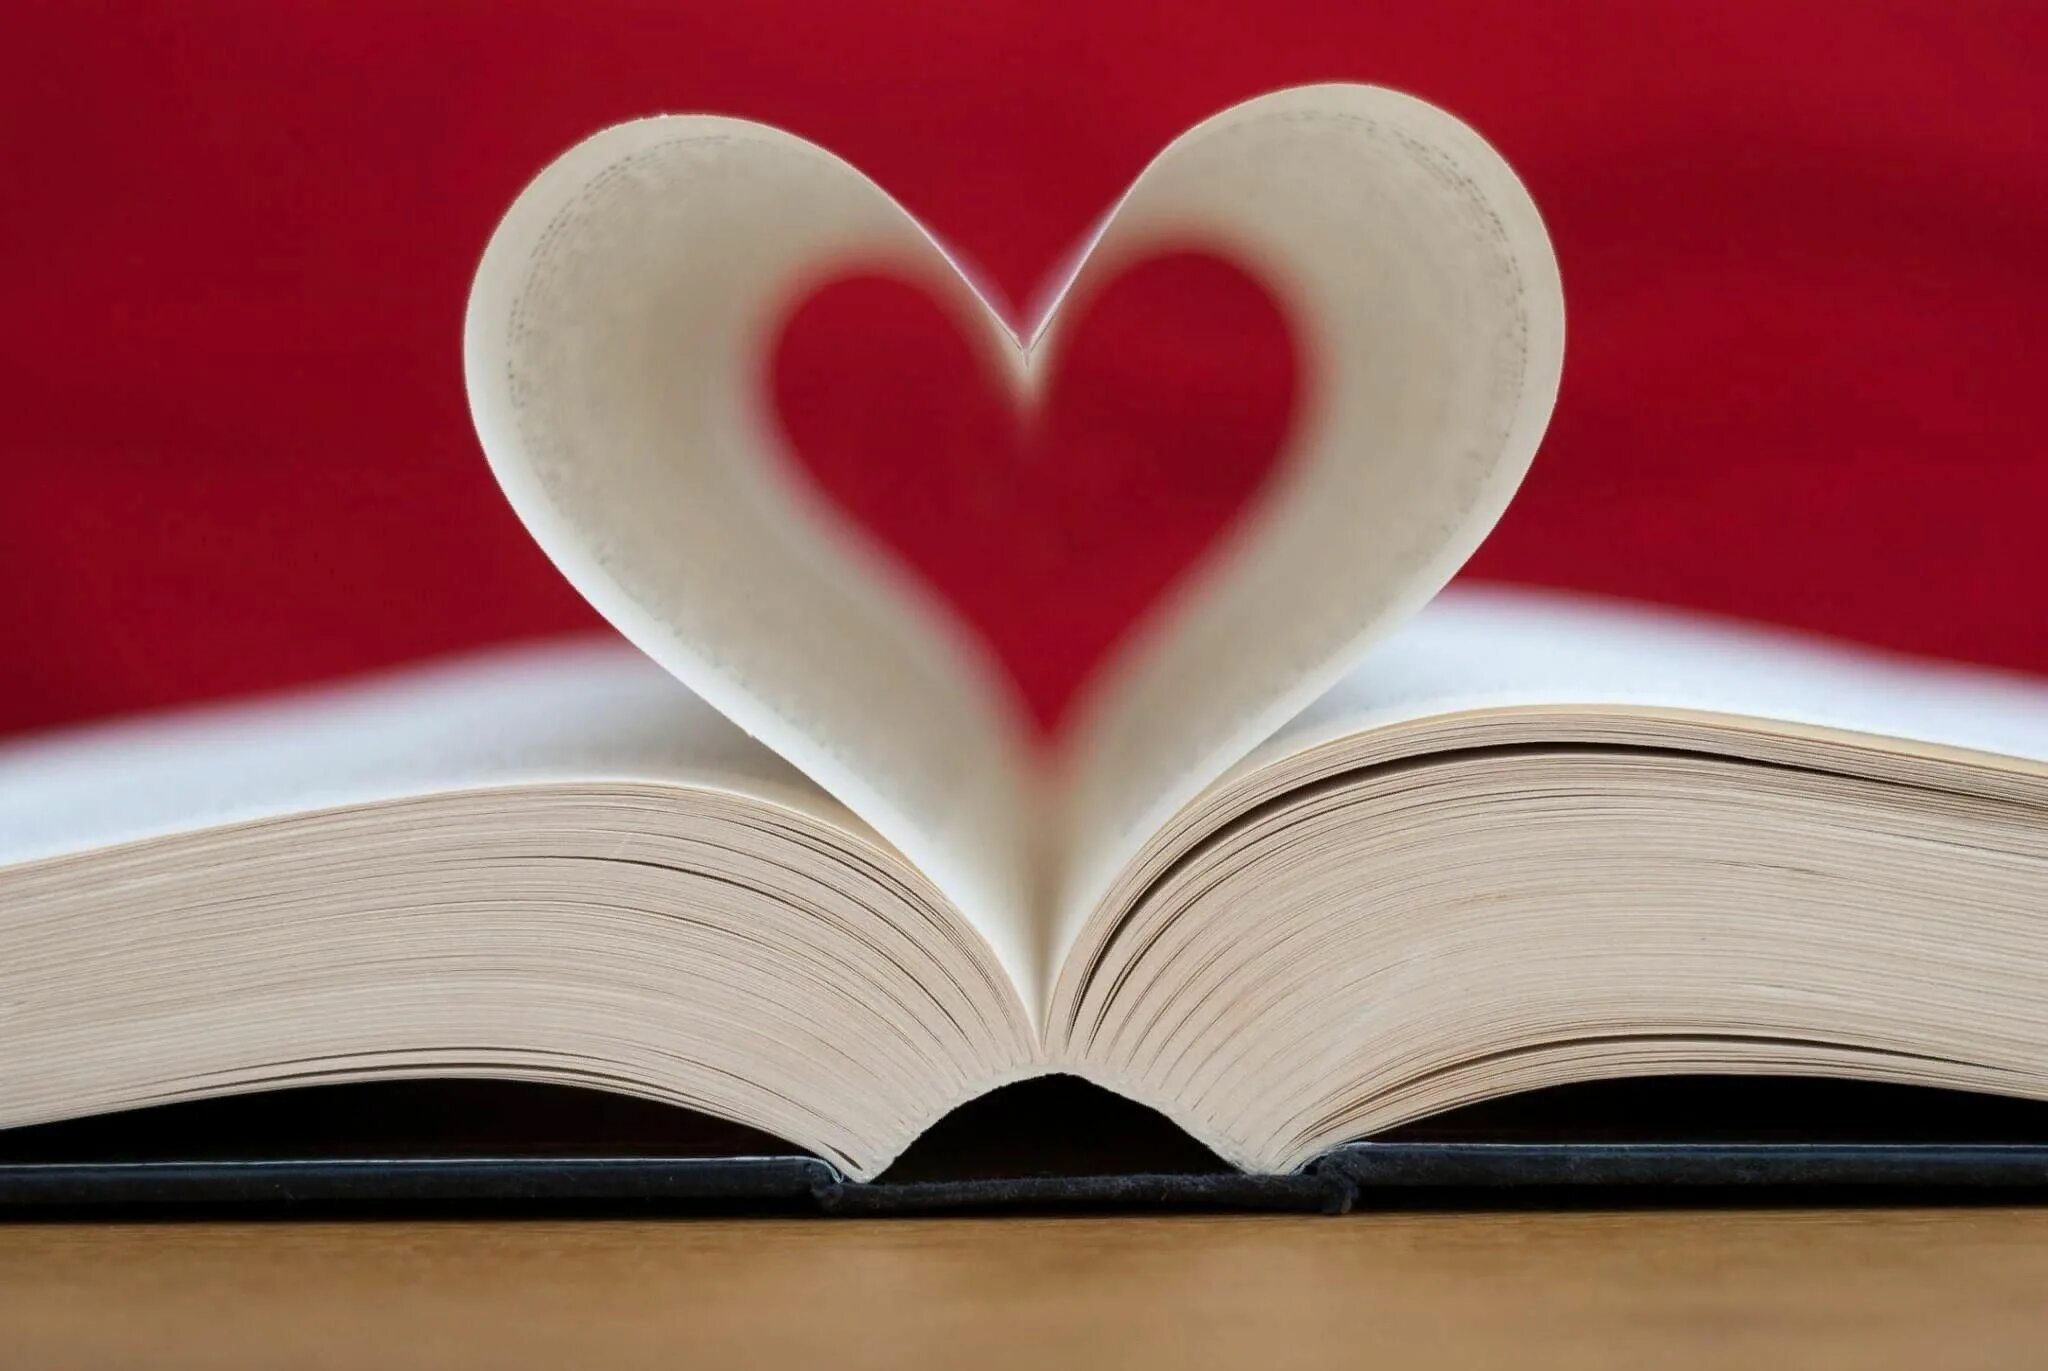 Читать любовь друзей. Сердечко из книг. Книга о любви. Книга сердце. Сердце из книг в библиотеке.